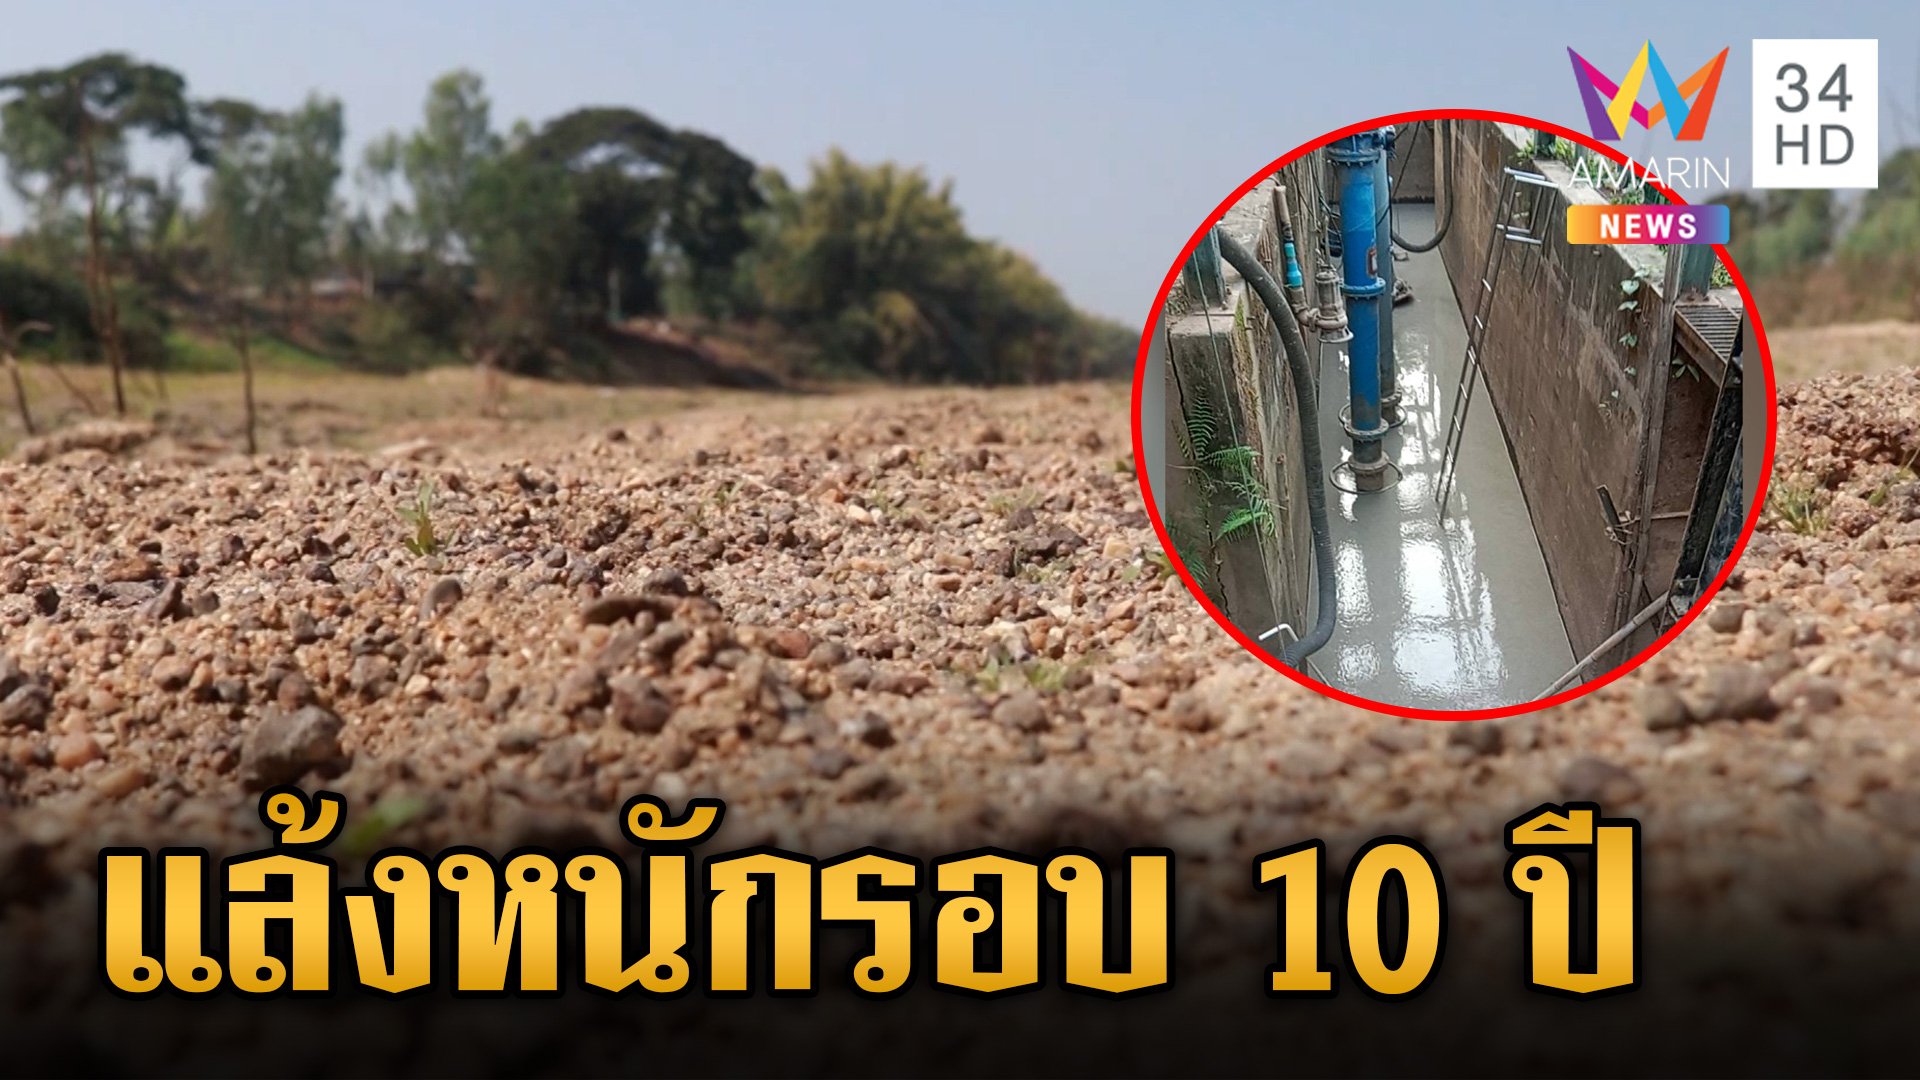 ชาวบ้านหน้าแห้ง ฤดูร้อนปี 2567 แล้งหนักในรอบหลาย 10 ปี เสี่ยงภัยแล้งทั่วไทย! | ข่าวเย็นอมรินทร์ | 3 พ.ค. 67 | AMARIN TVHD34